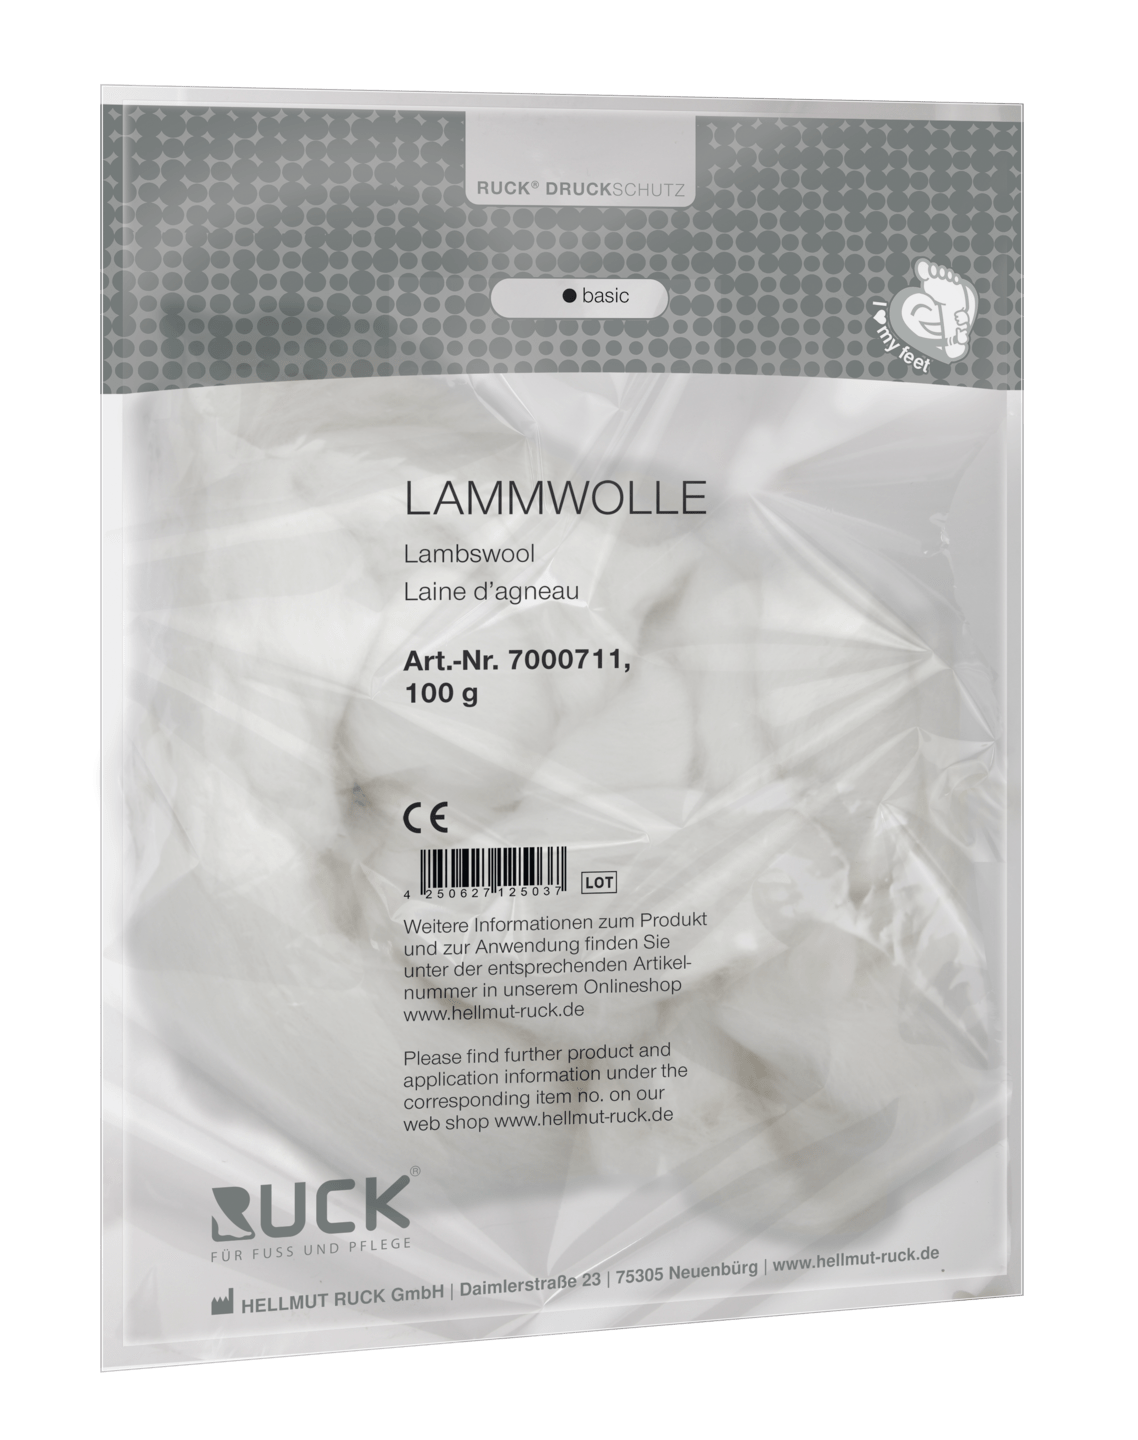 RUCK DRUCKSCHUTZ - Lammwolle, 100 g in beige